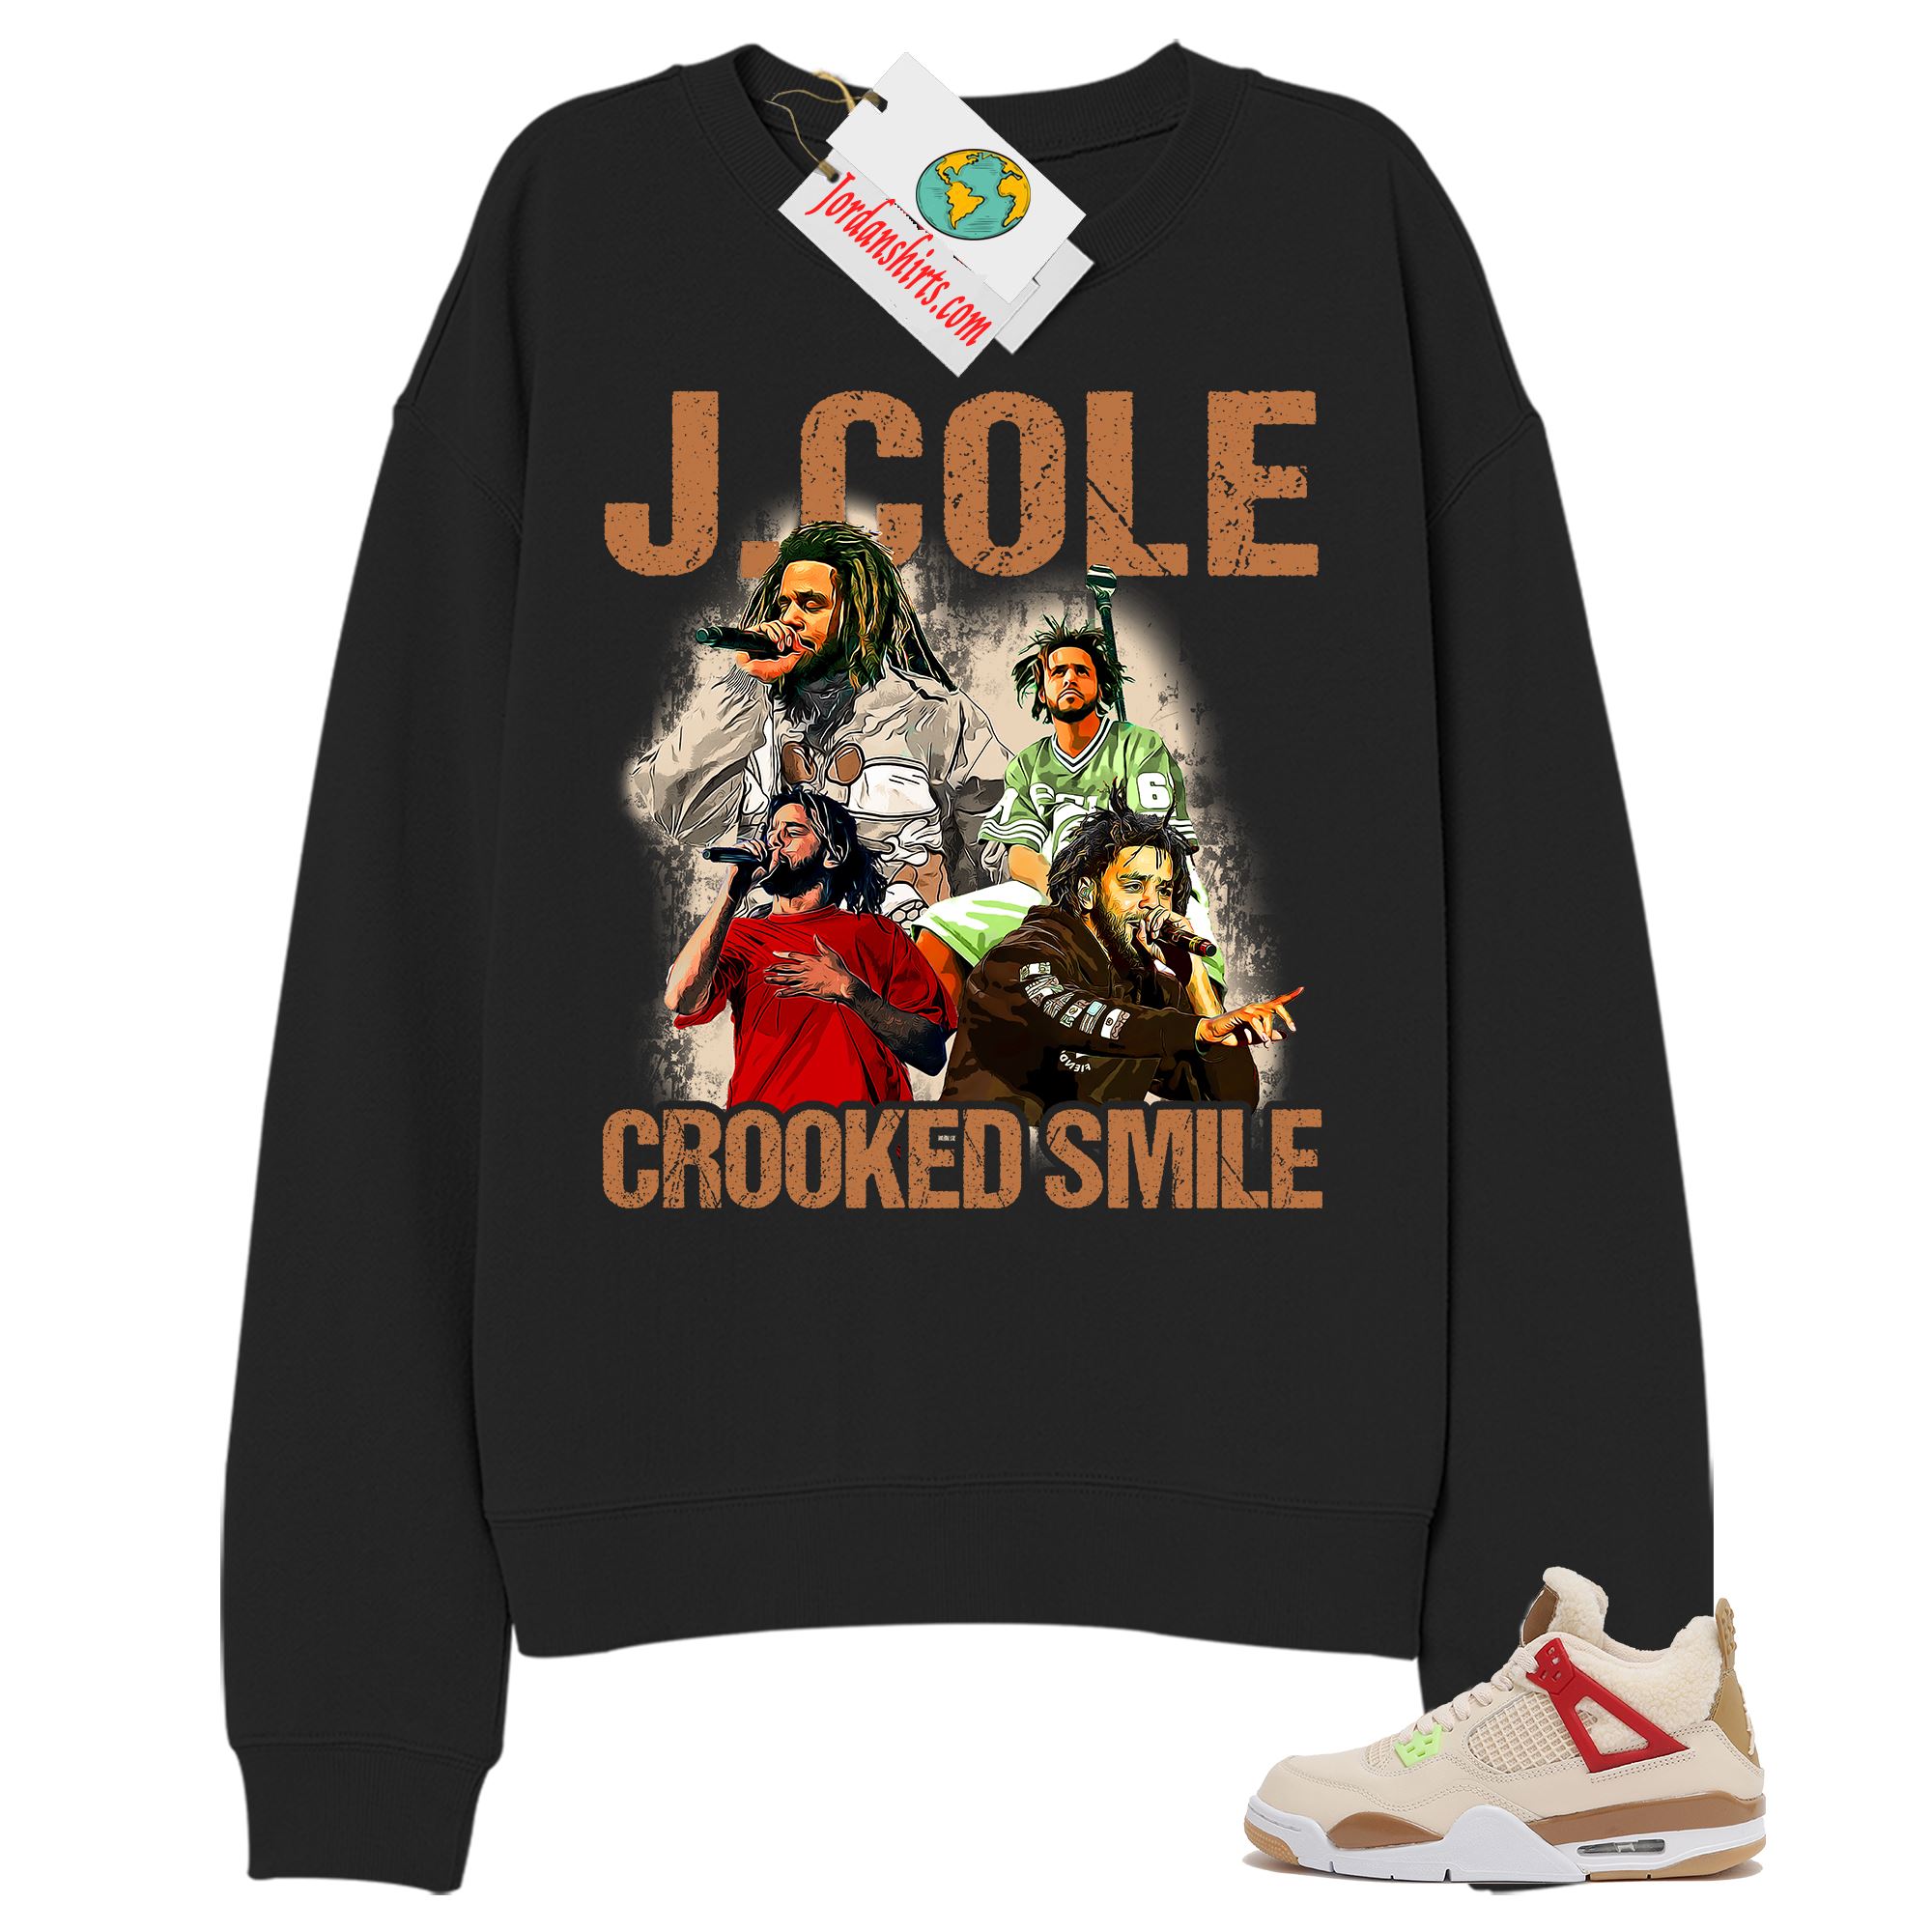 Jordan 4 Sweatshirt, J Cole Bootleg Vintage Raptee Black Sweatshirt Air Jordan 4 Wild Things 4s Plus Size Up To 5xl